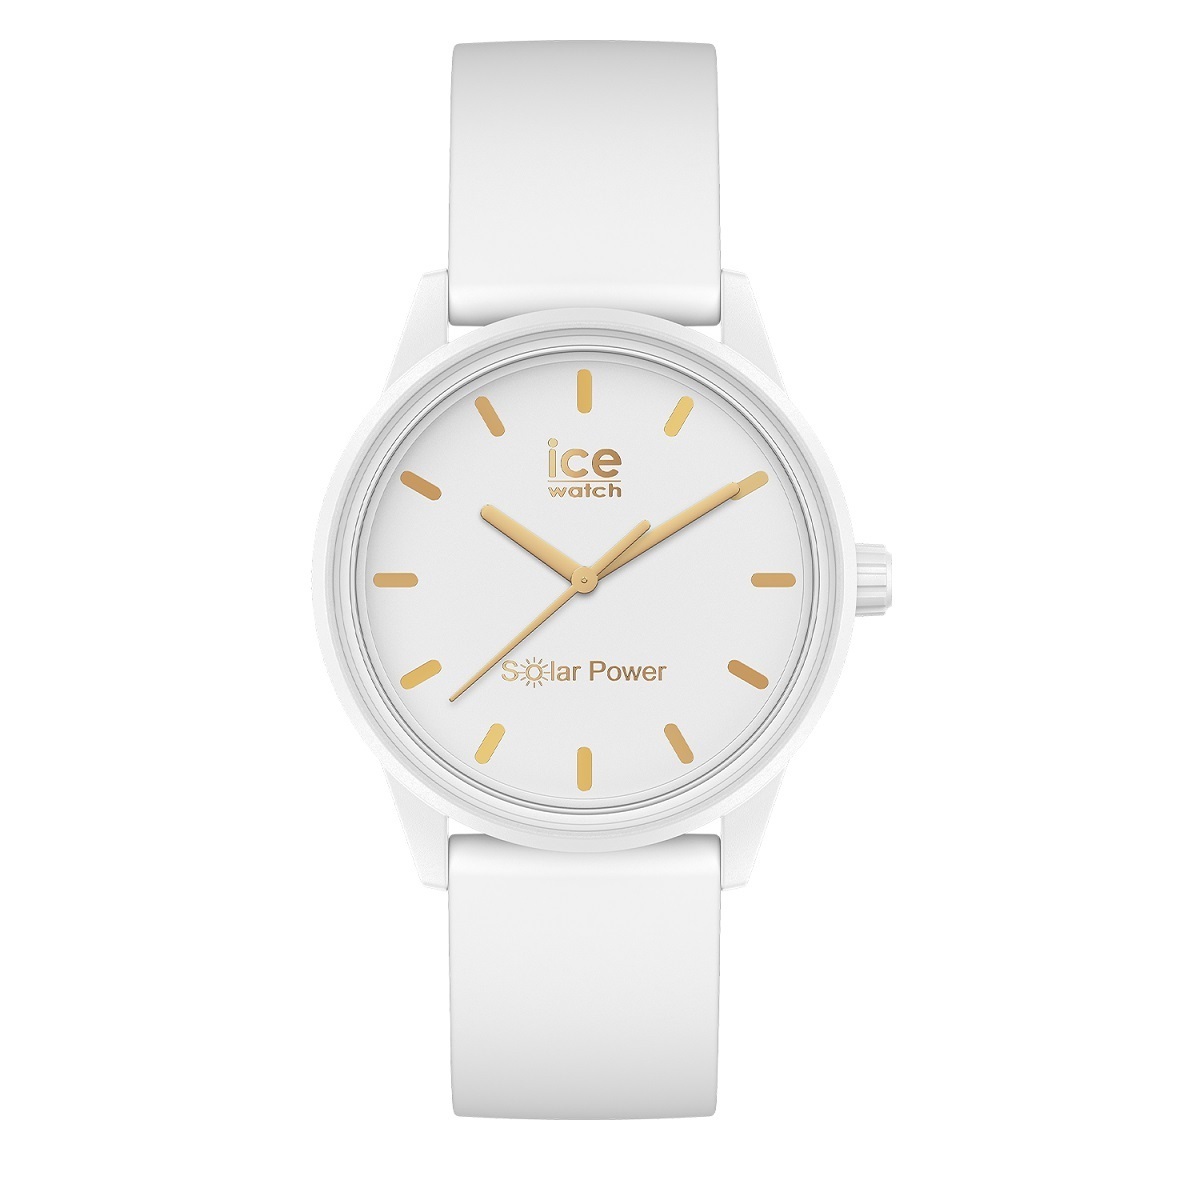 ICE WATCH アイスウォッチ 腕時計 アイスソーラーパワー 36mm スモール ホワイト 018474 【正規品】